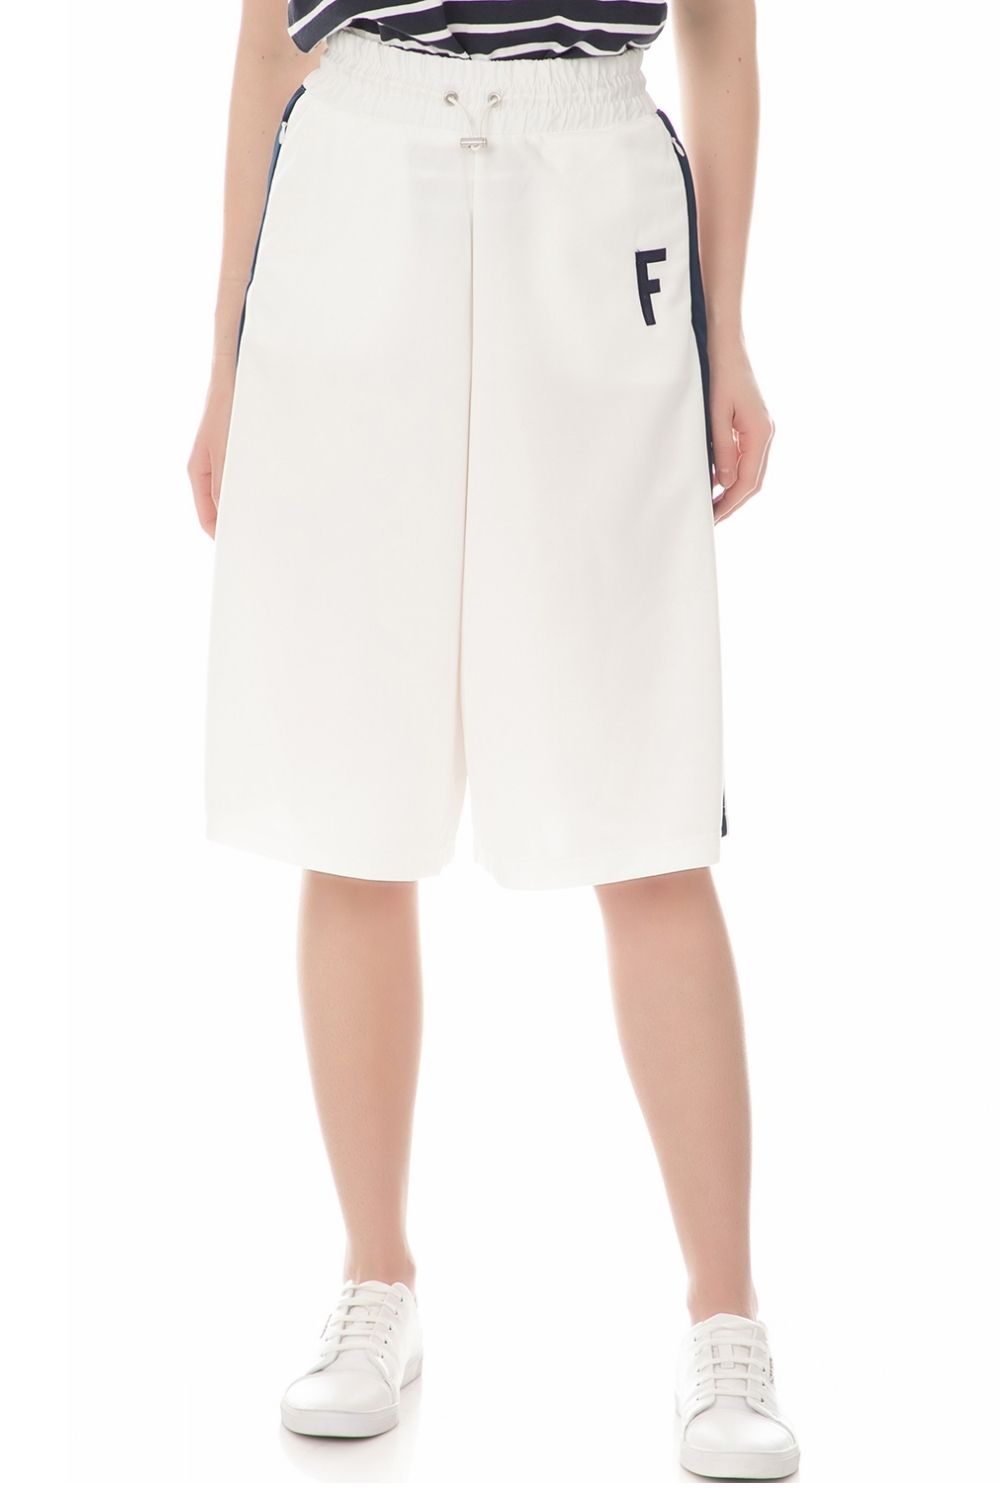 Γυναικεία/Ρούχα/Παντελόνια/Φόρμες FRANKLIN & MARSHALL - Γυναικείο παντελόνι φόρμας FRANKLIN & MARSHALL λευκό